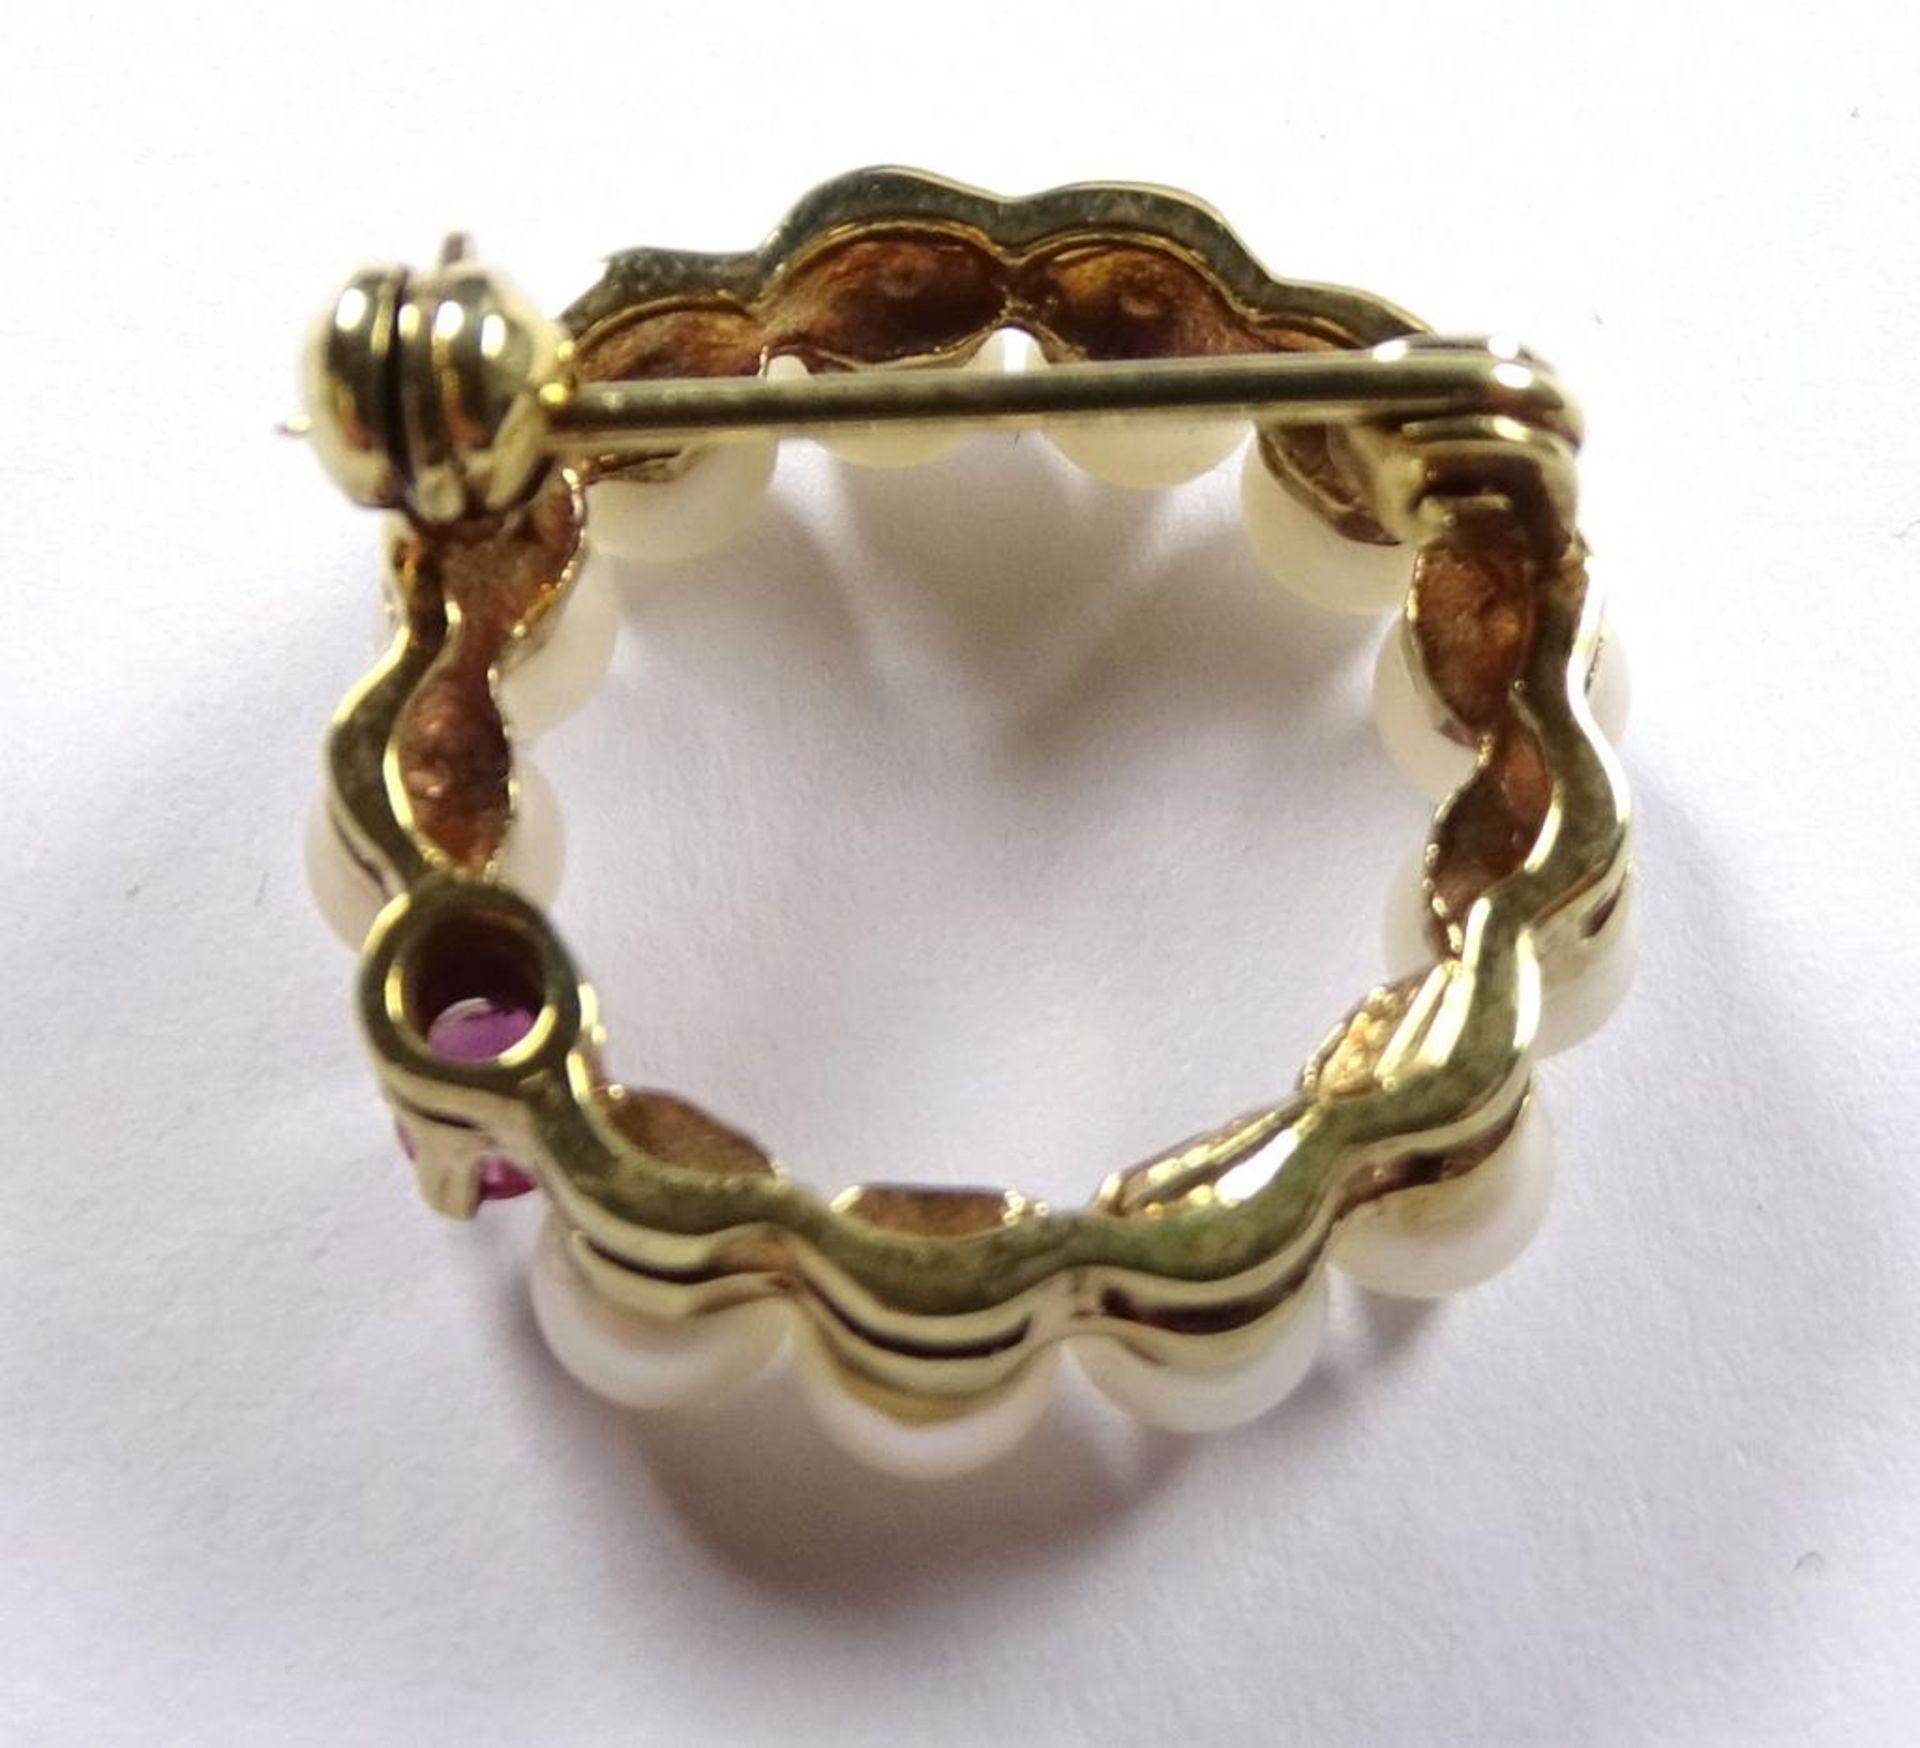 Zuchtperlen Goldbrosche 585/000, mit Rubin,ges d-20mm, Perlen d-3,8mm, 4,1gr.Neu und ungetragen - Bild 3 aus 3